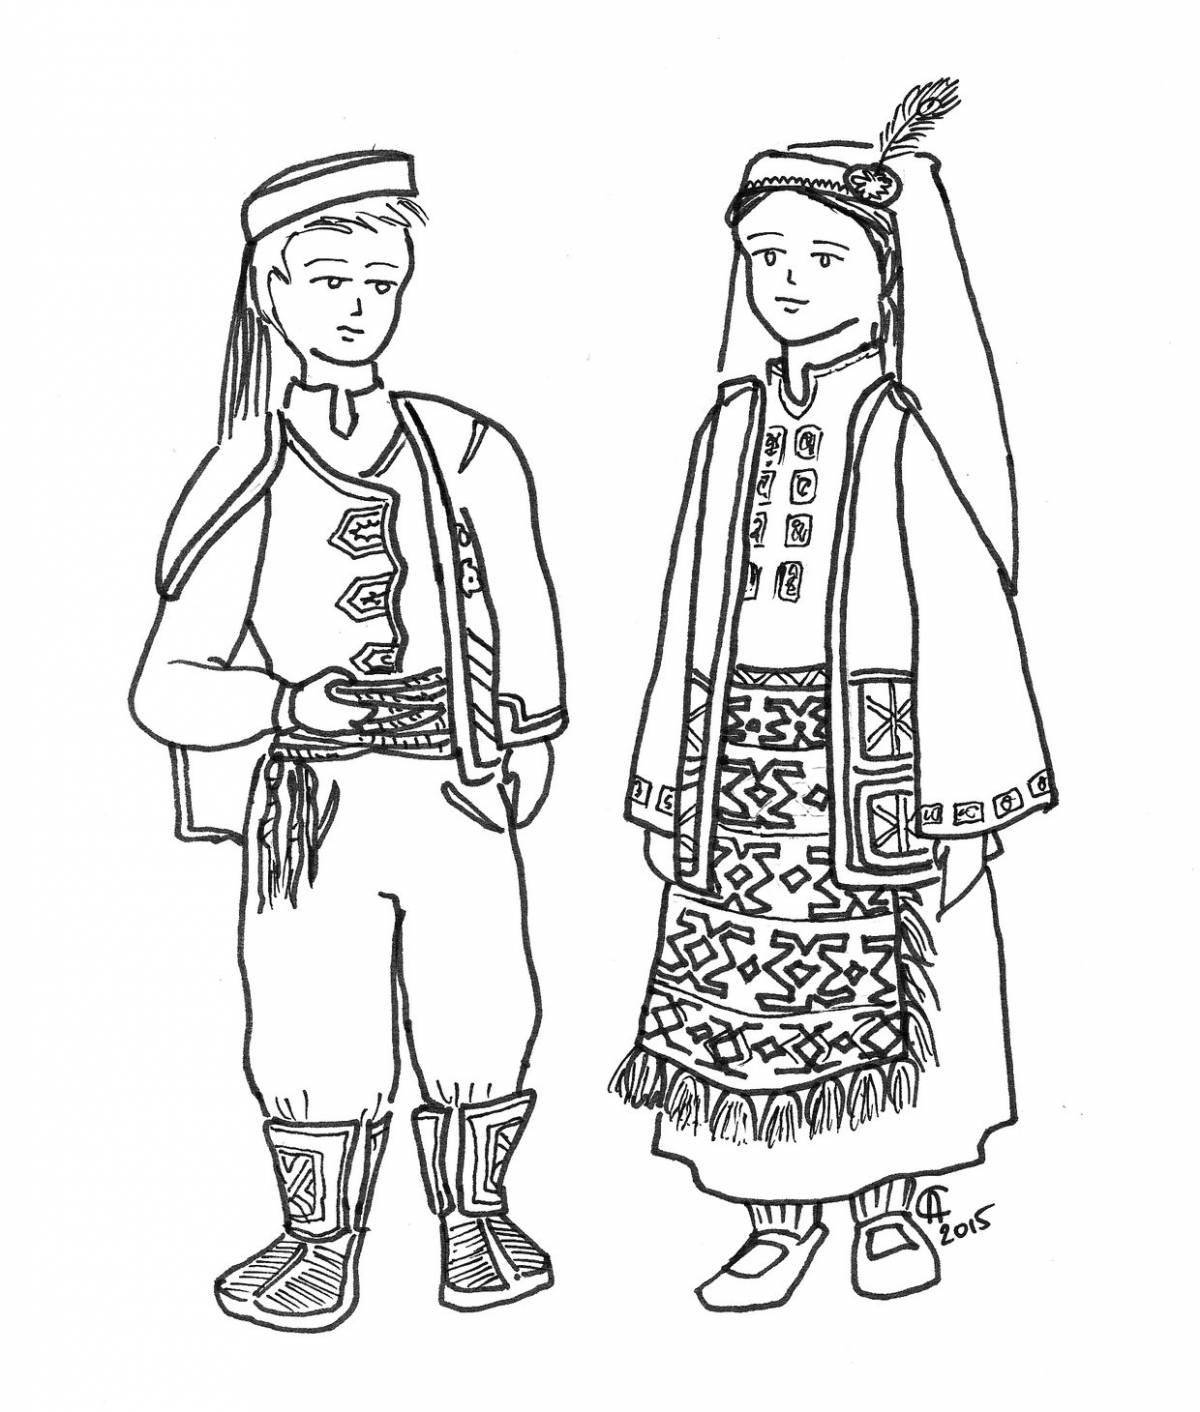 Colouring colorful Tatar folk costume